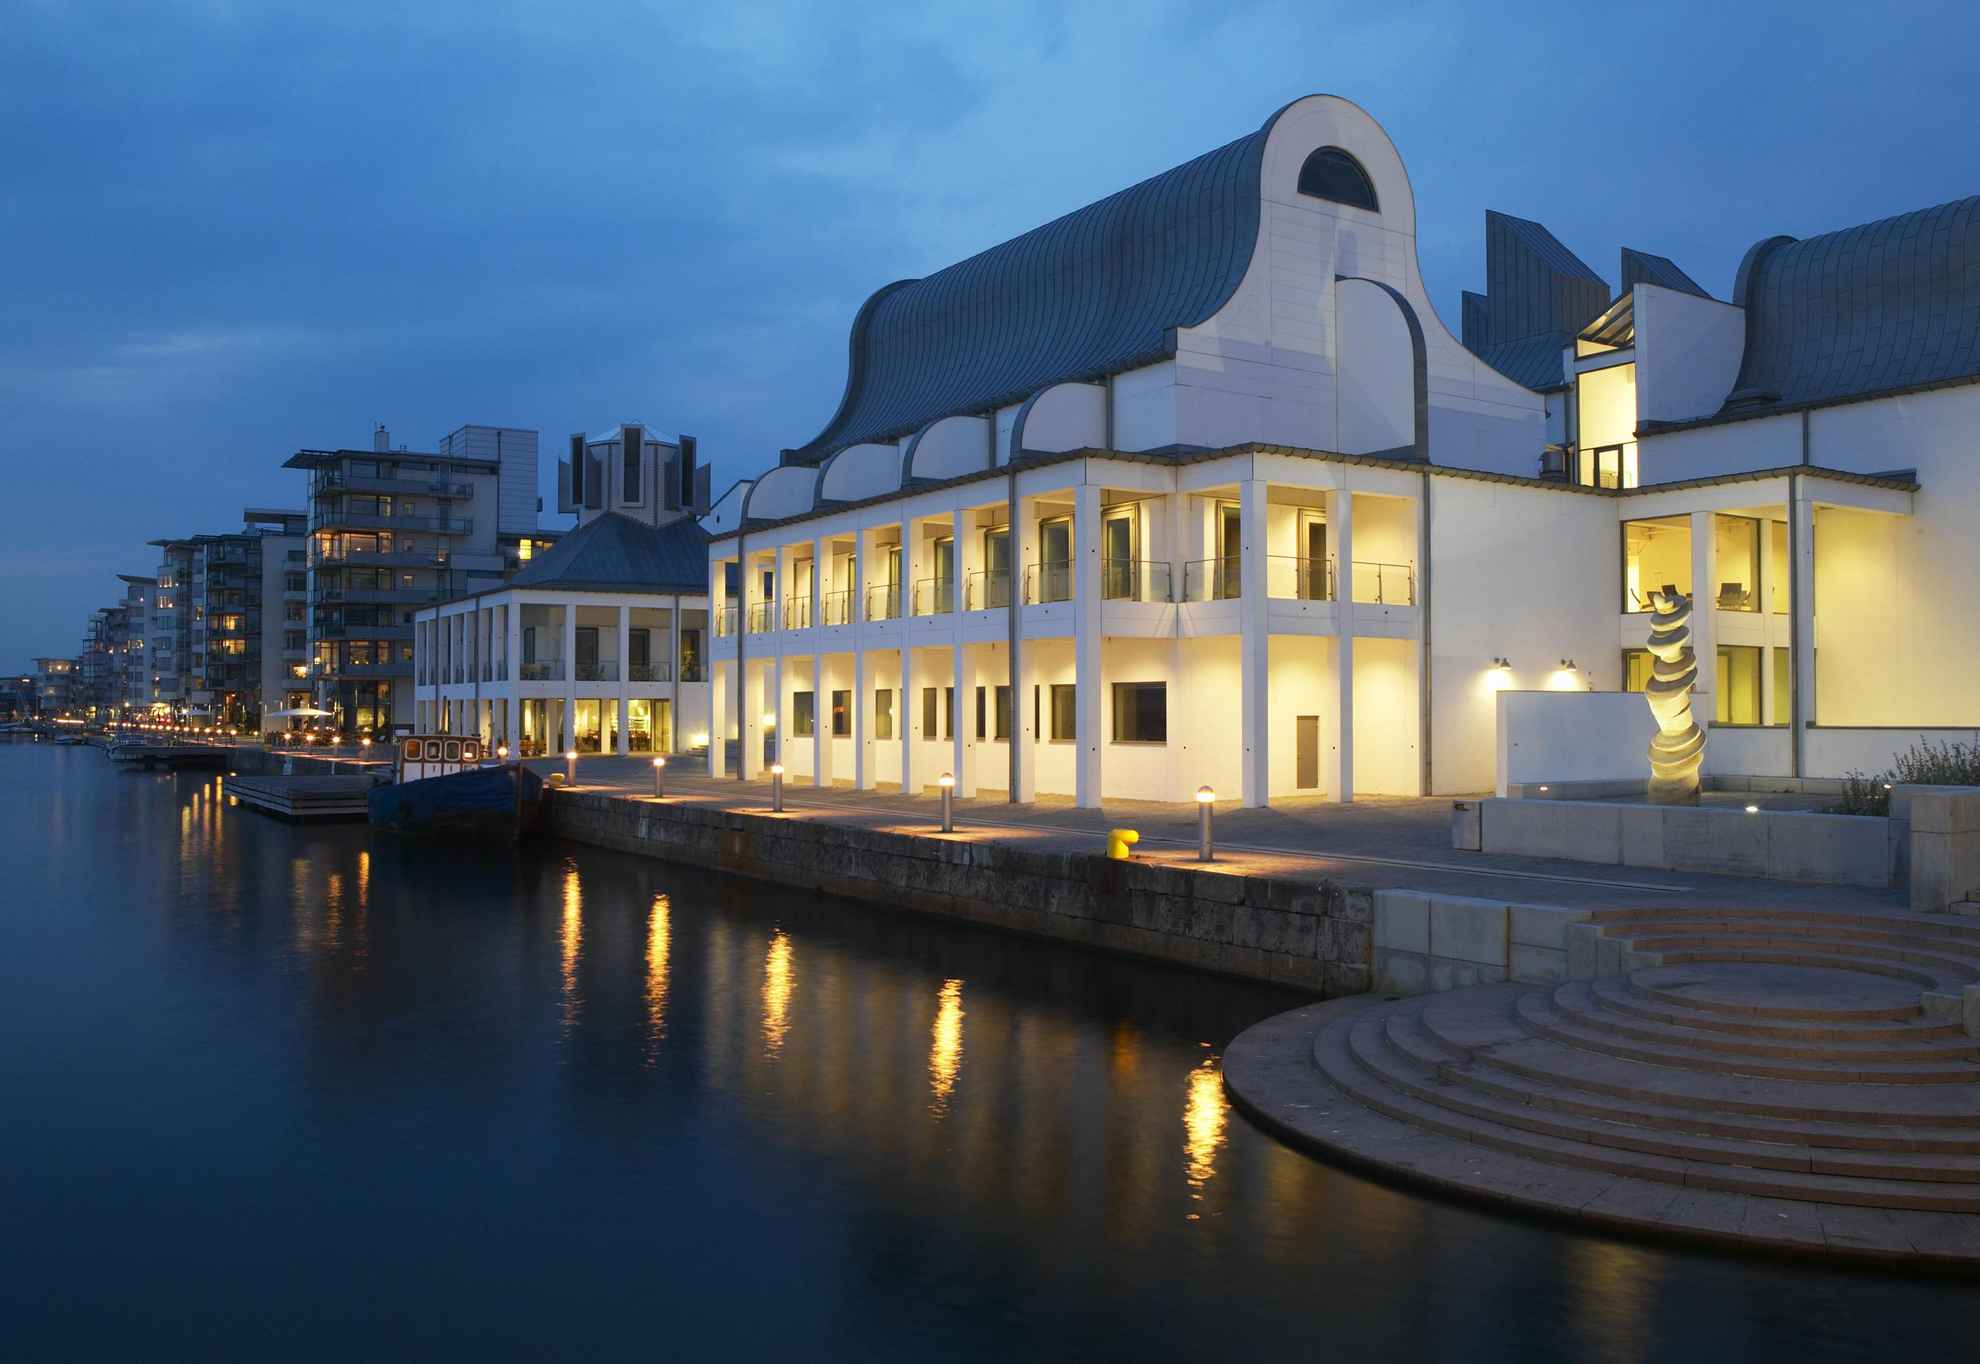 Dunkers Kulturzentrum im Abendlicht und mit Lampen an der Vorderseite, direkt am Meer an einem Jachthafen gelegen. Im Hintergrund siehst du Gebäude und Boote am Ufer.